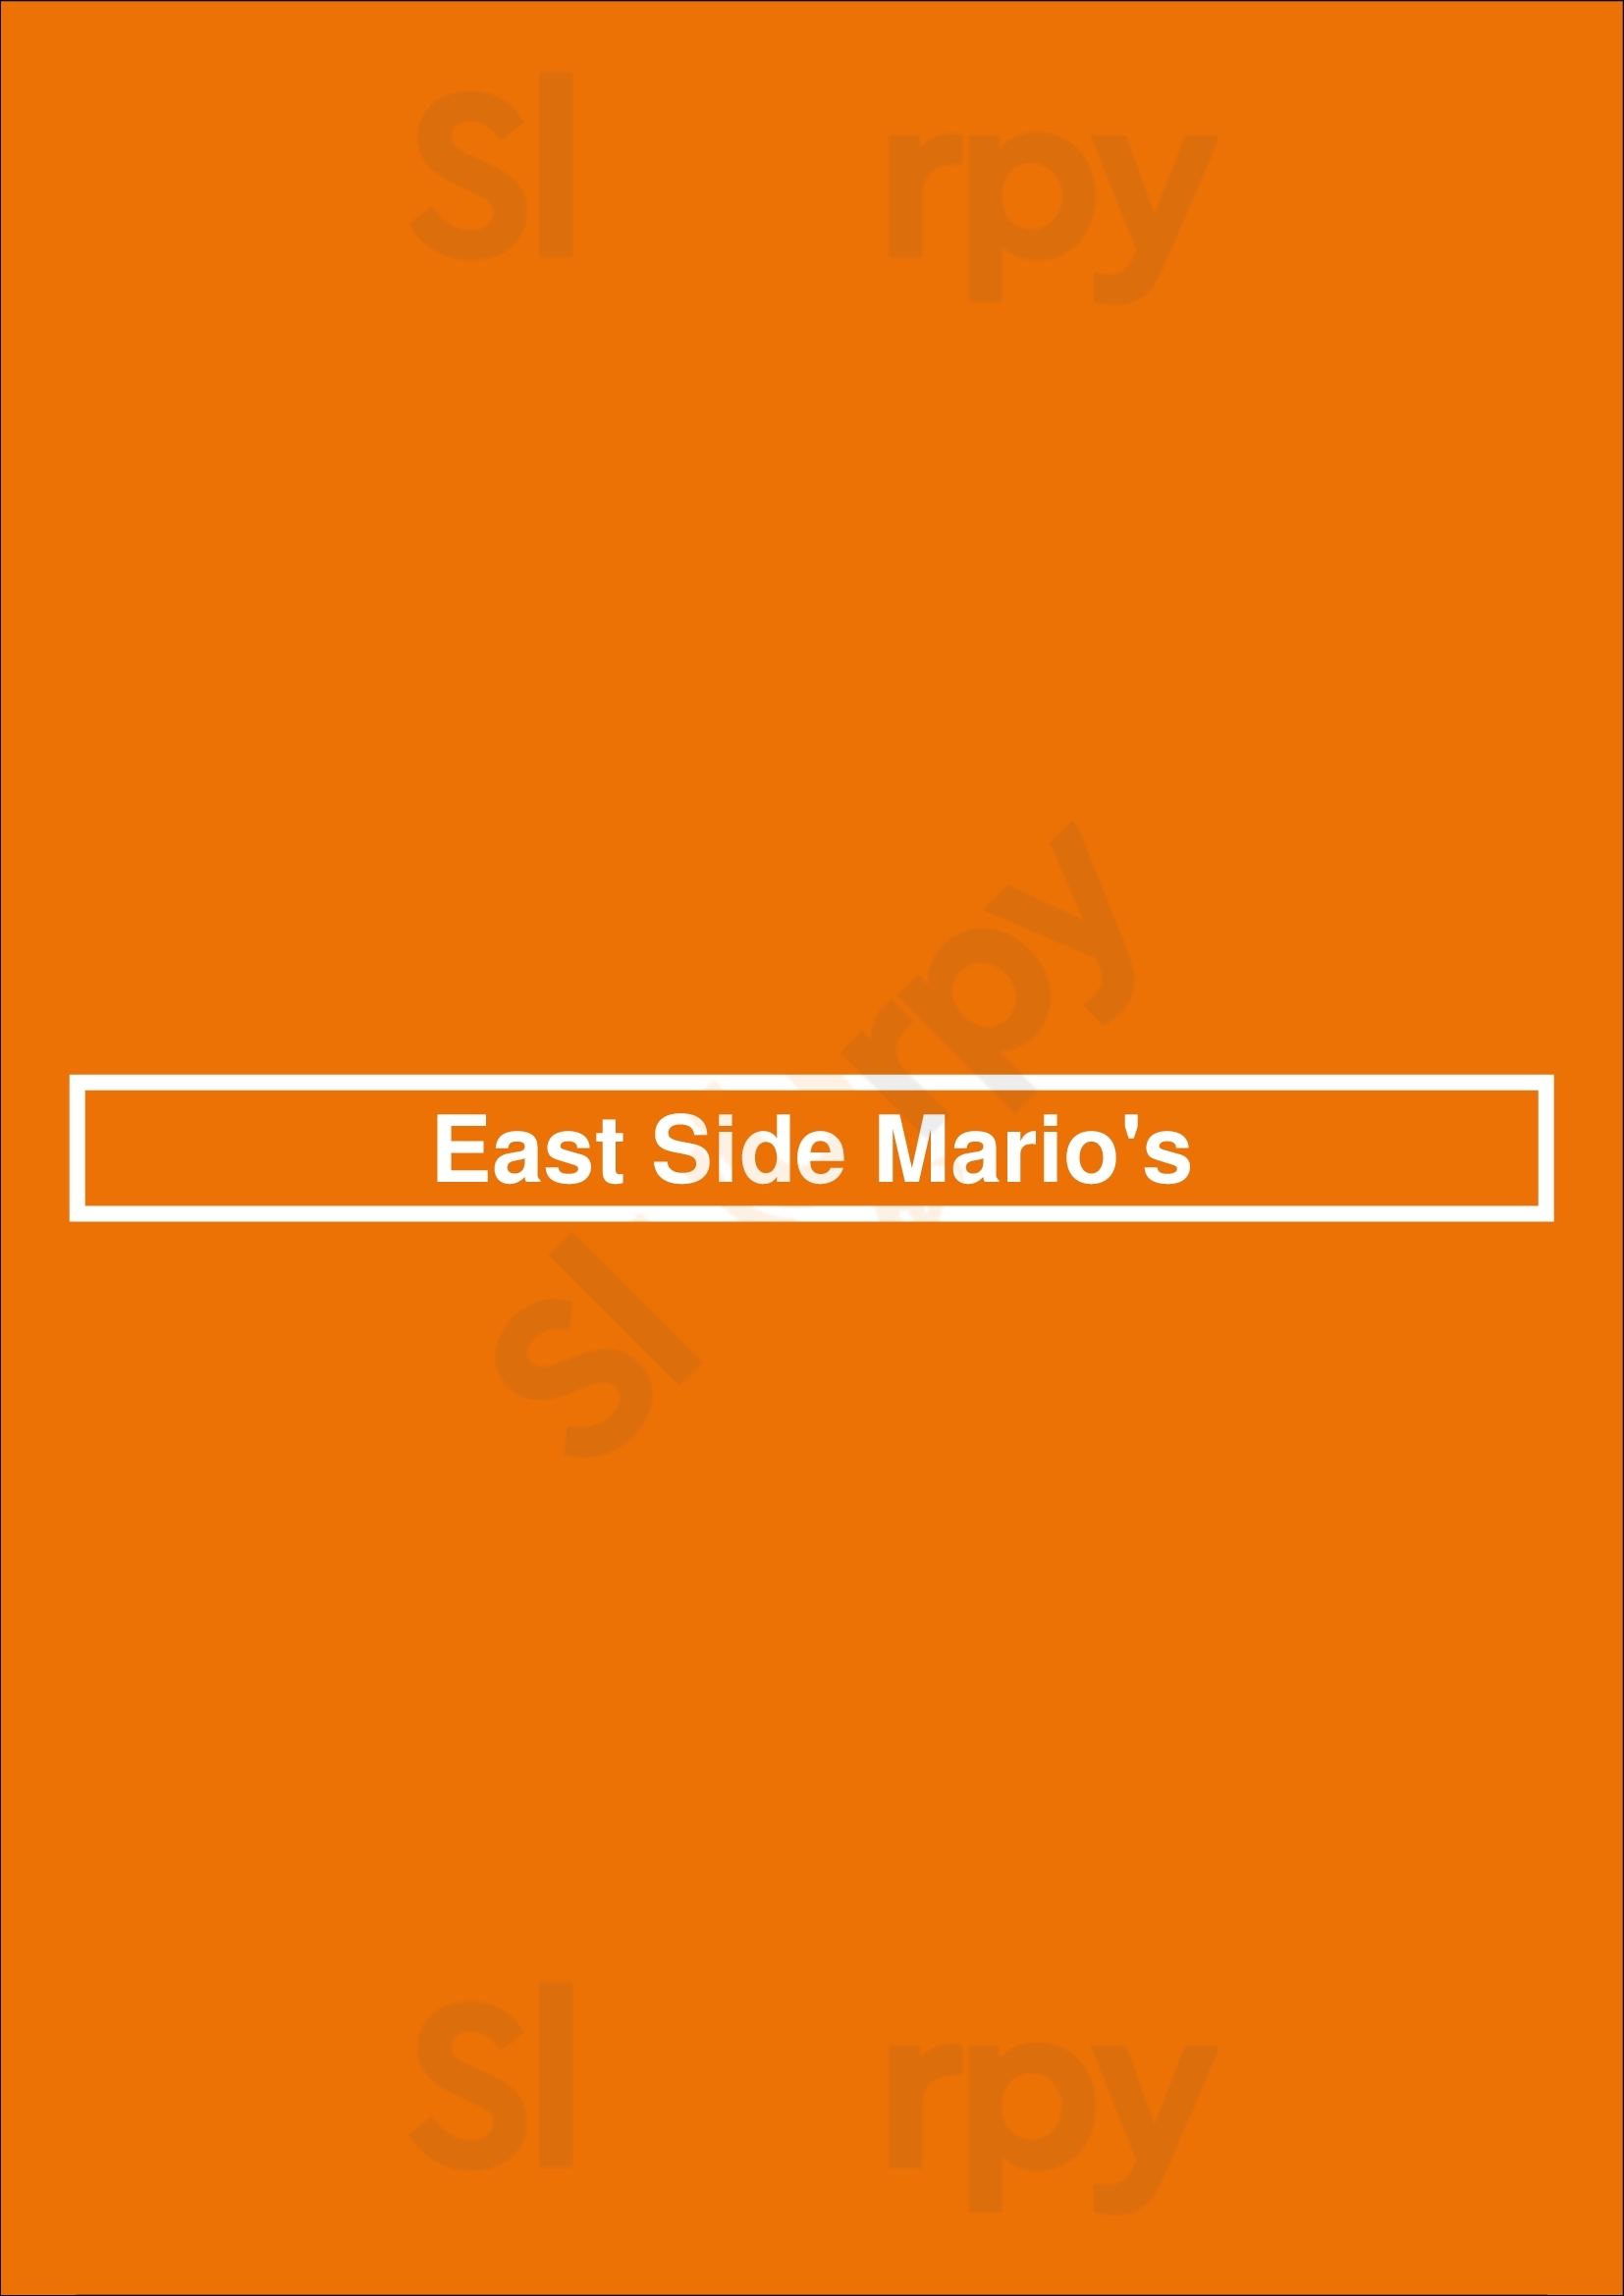 East Side Mario's Mississauga Menu - 1